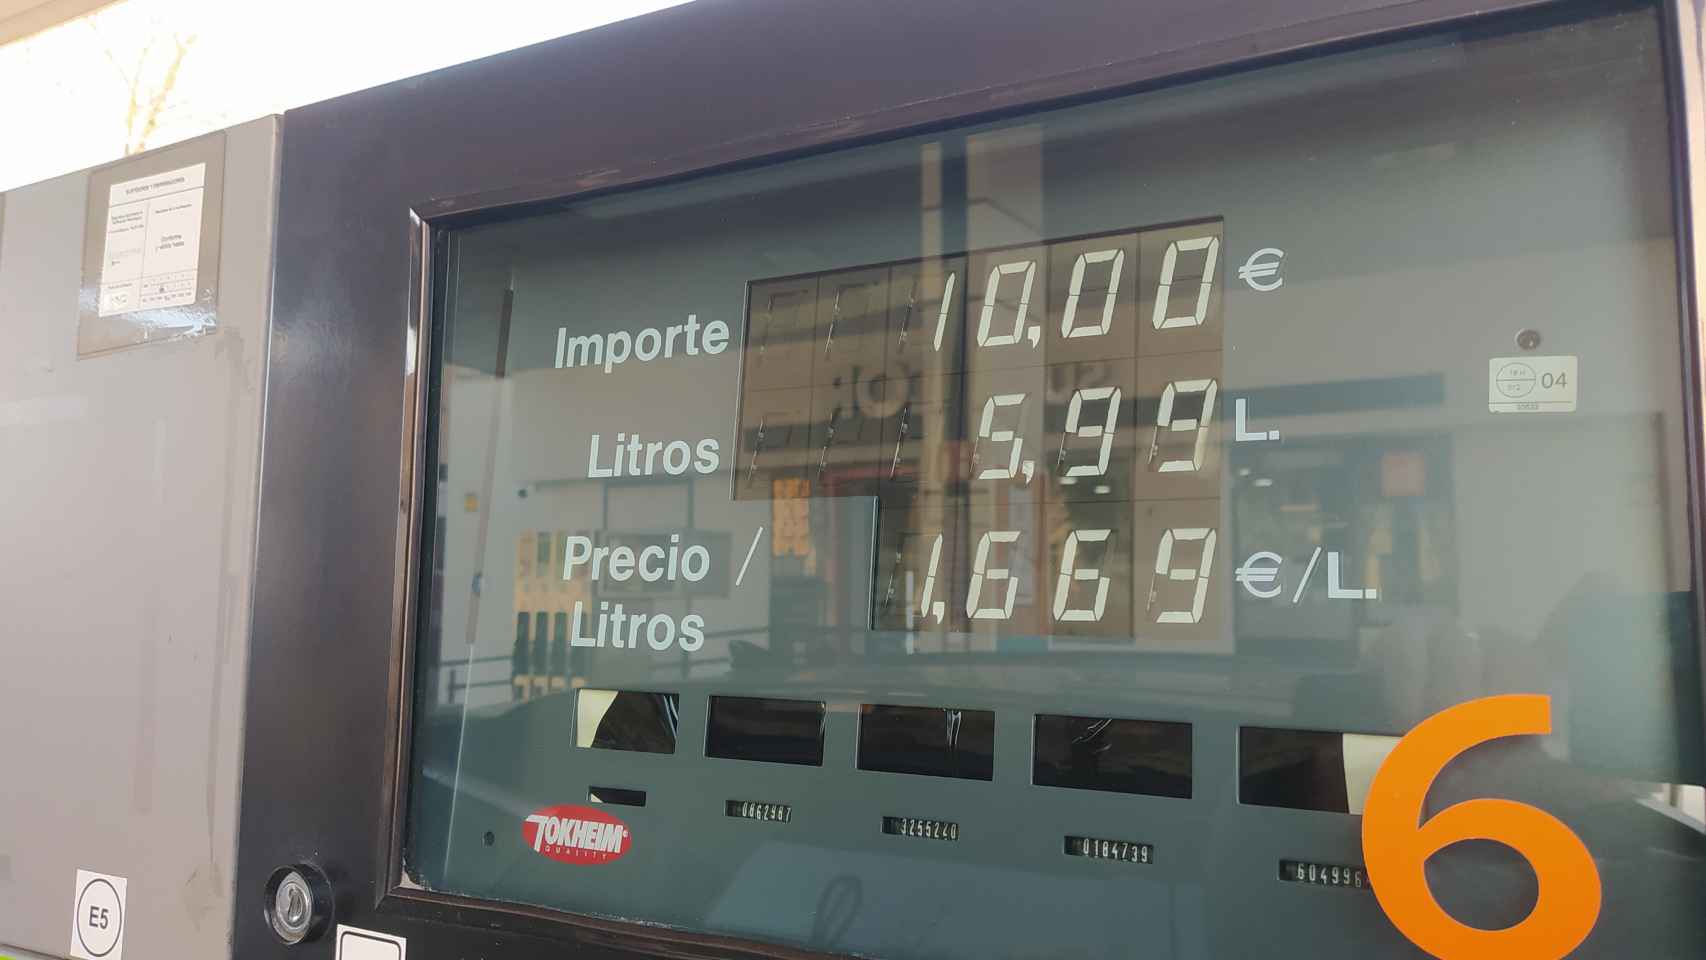 Imagen del surtidor de Repsol con la gasolina a 1,669 € (sin descuento).